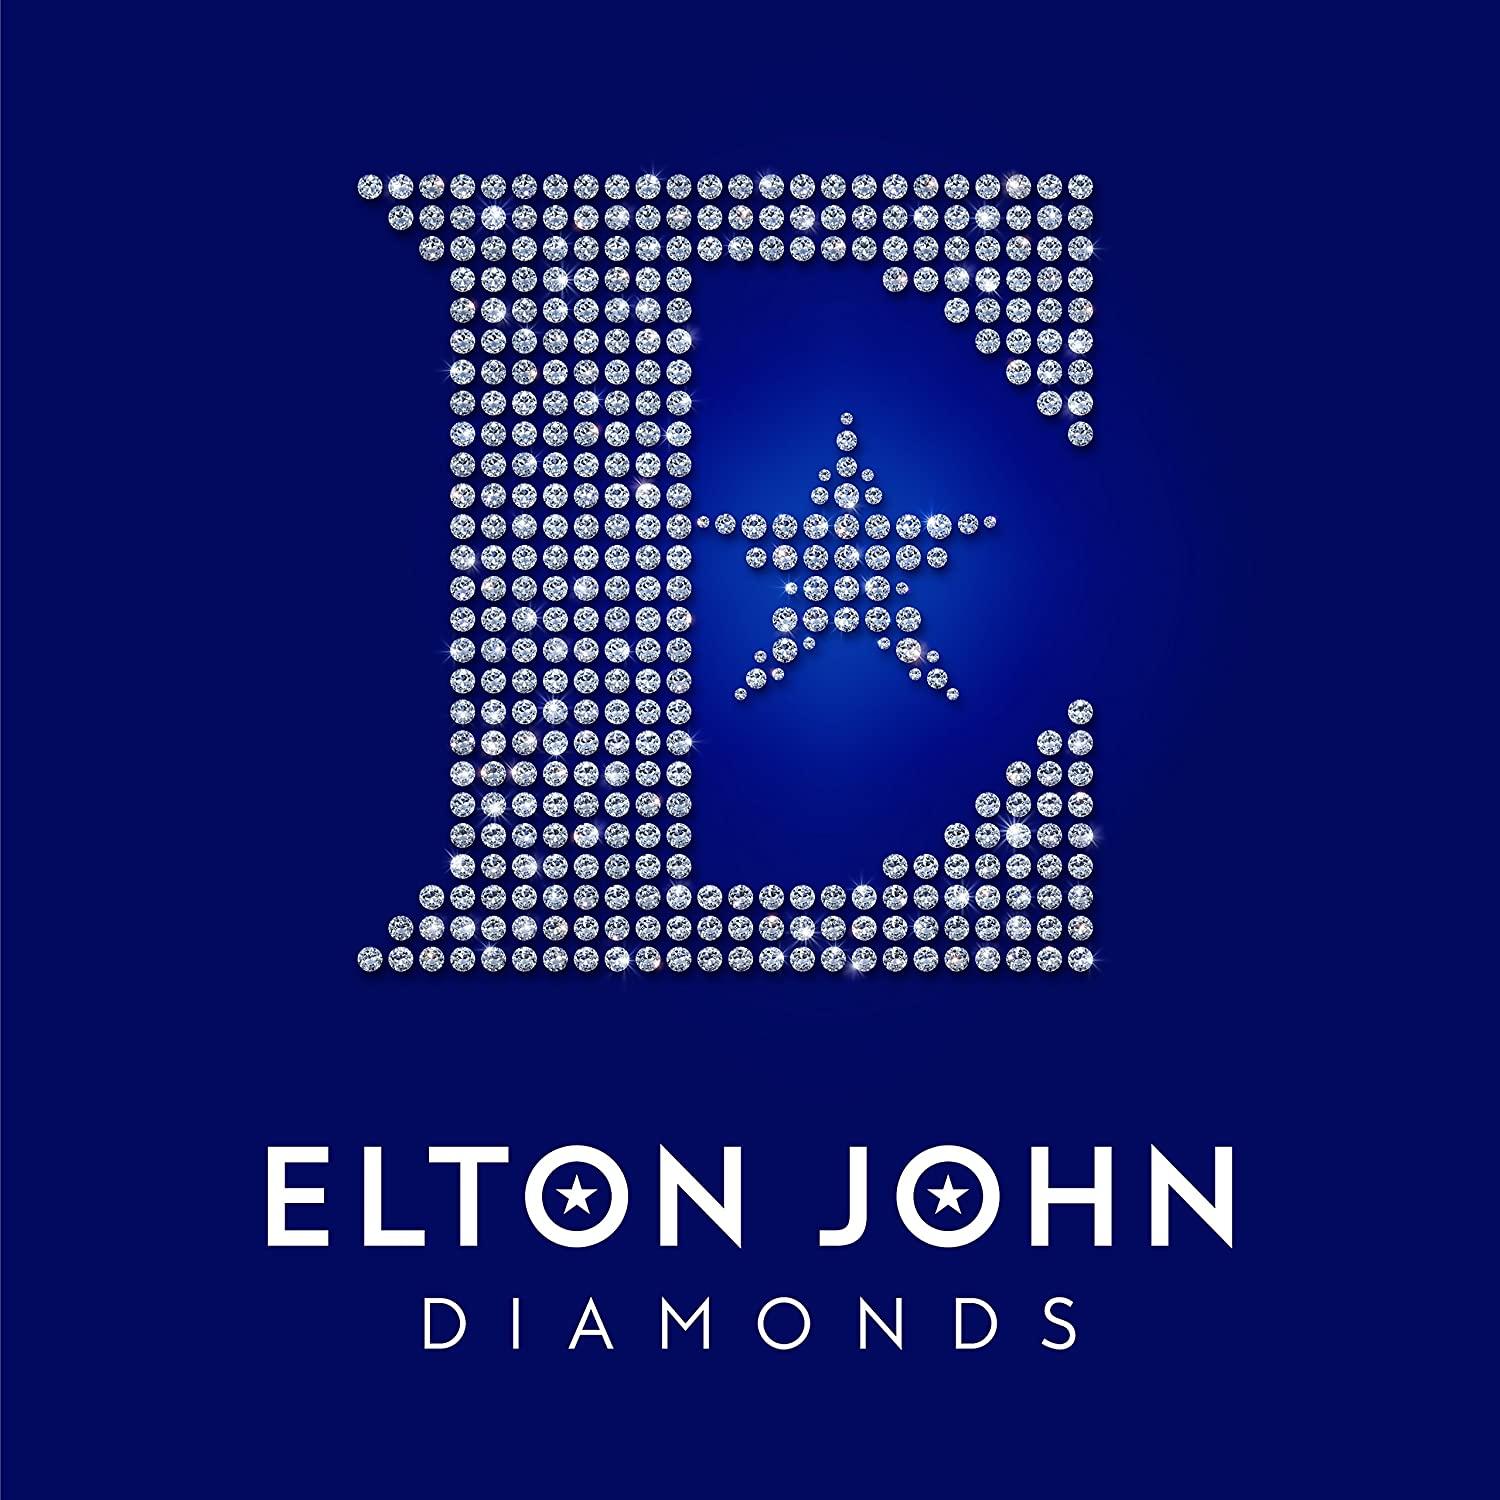 Elton John Diamonds Vinyl for $16.80